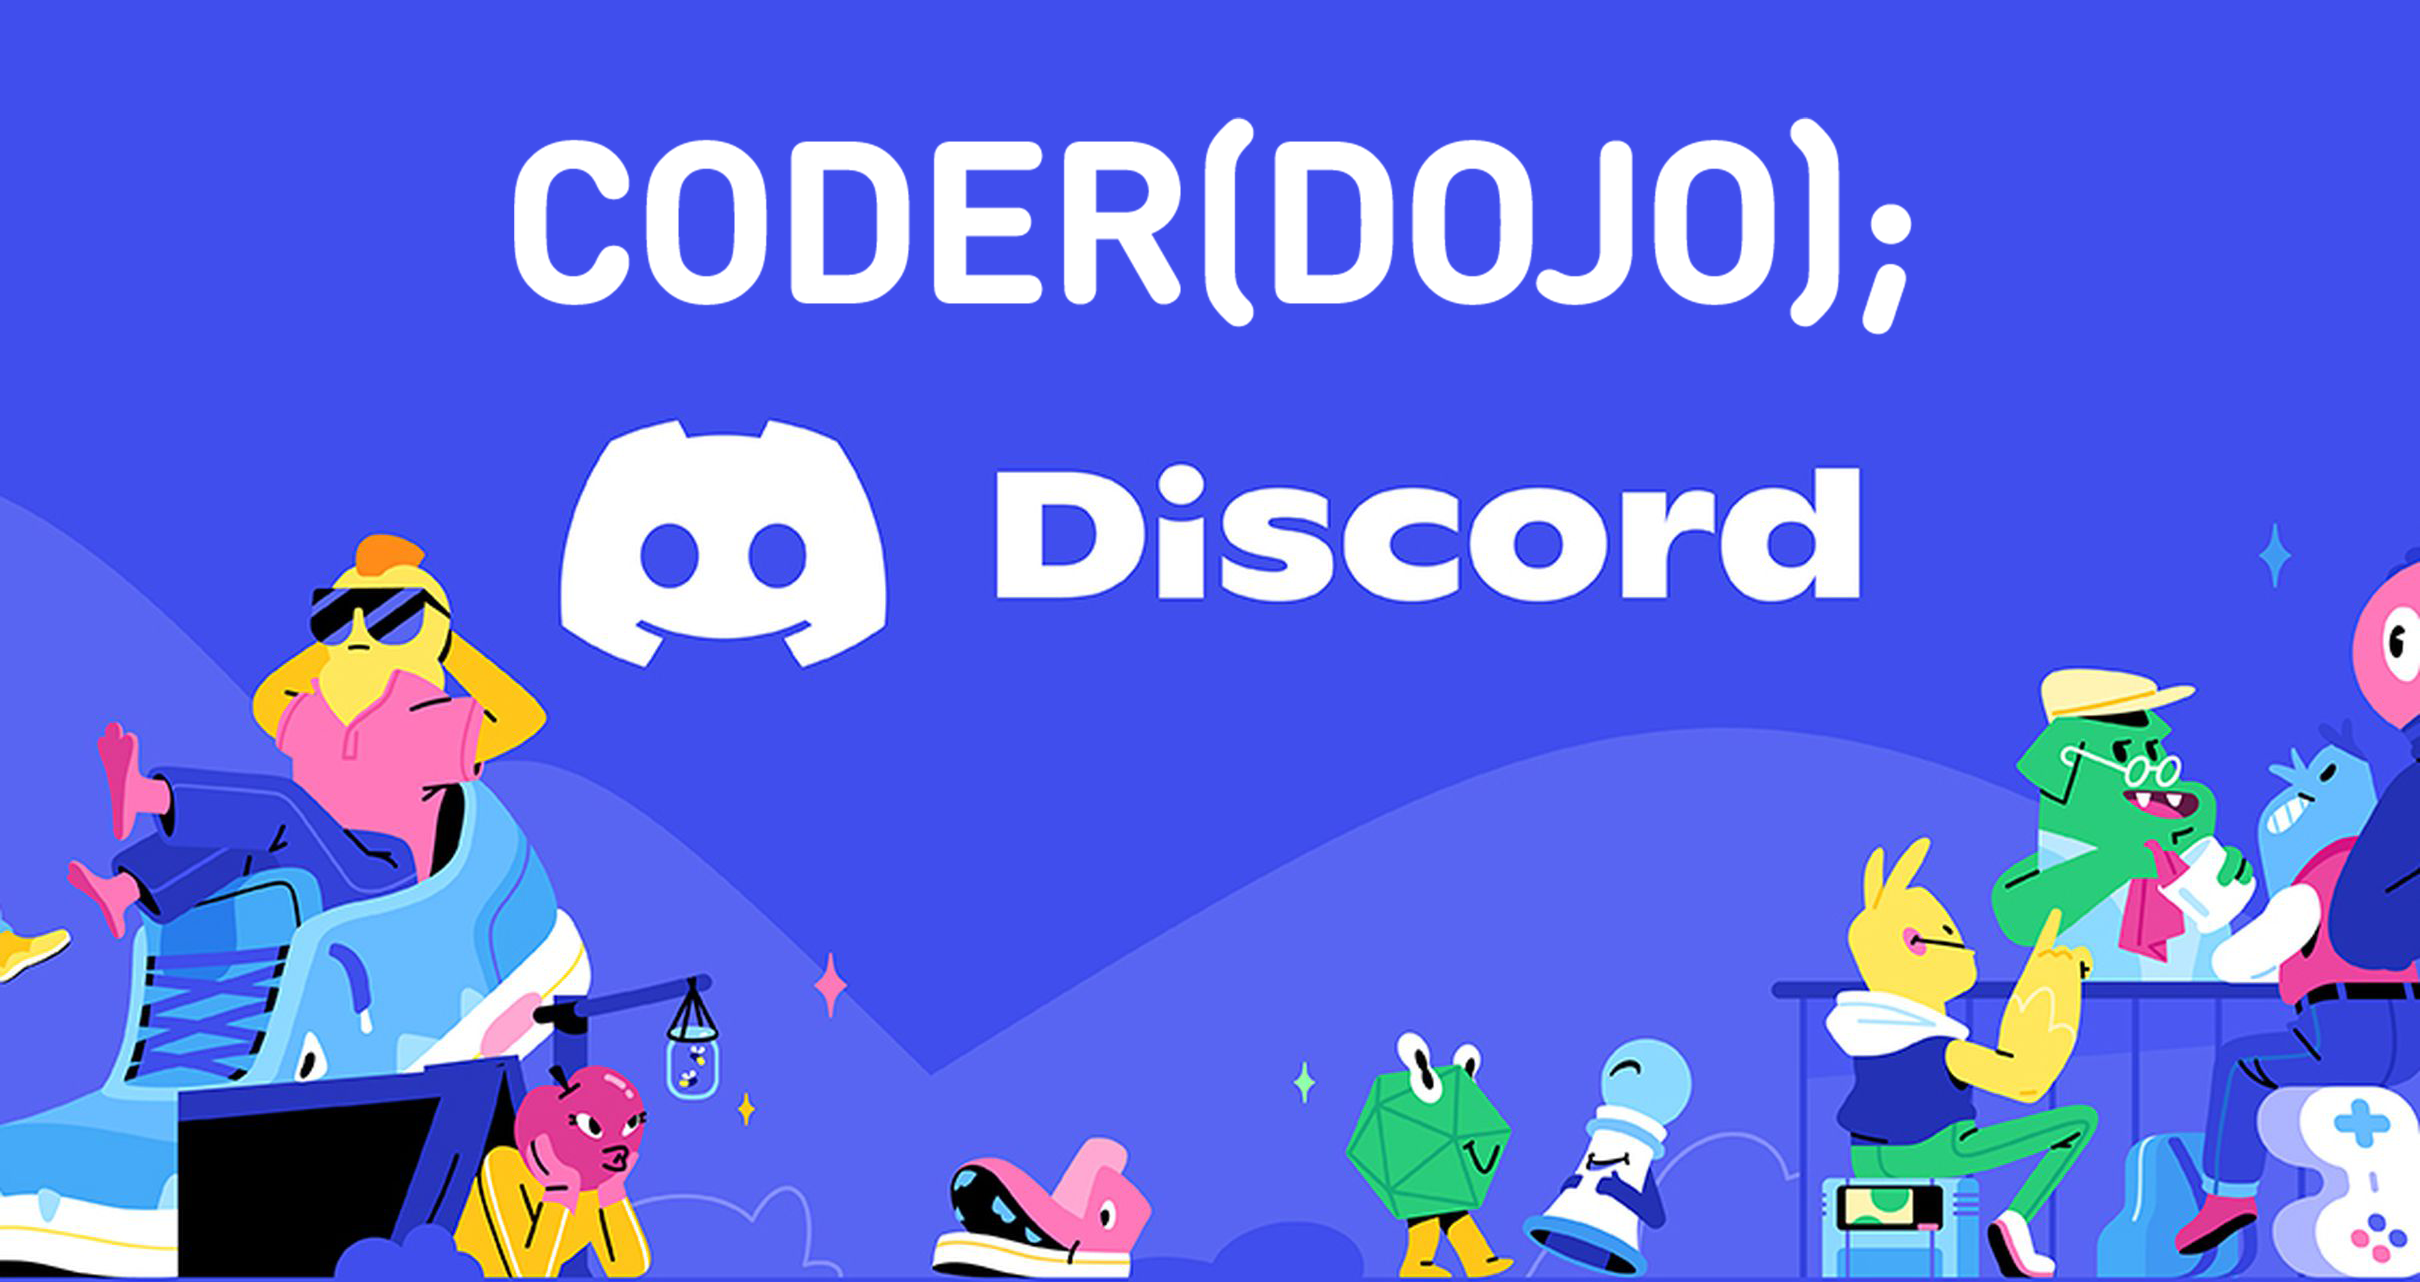 CoderDojo Slack Community